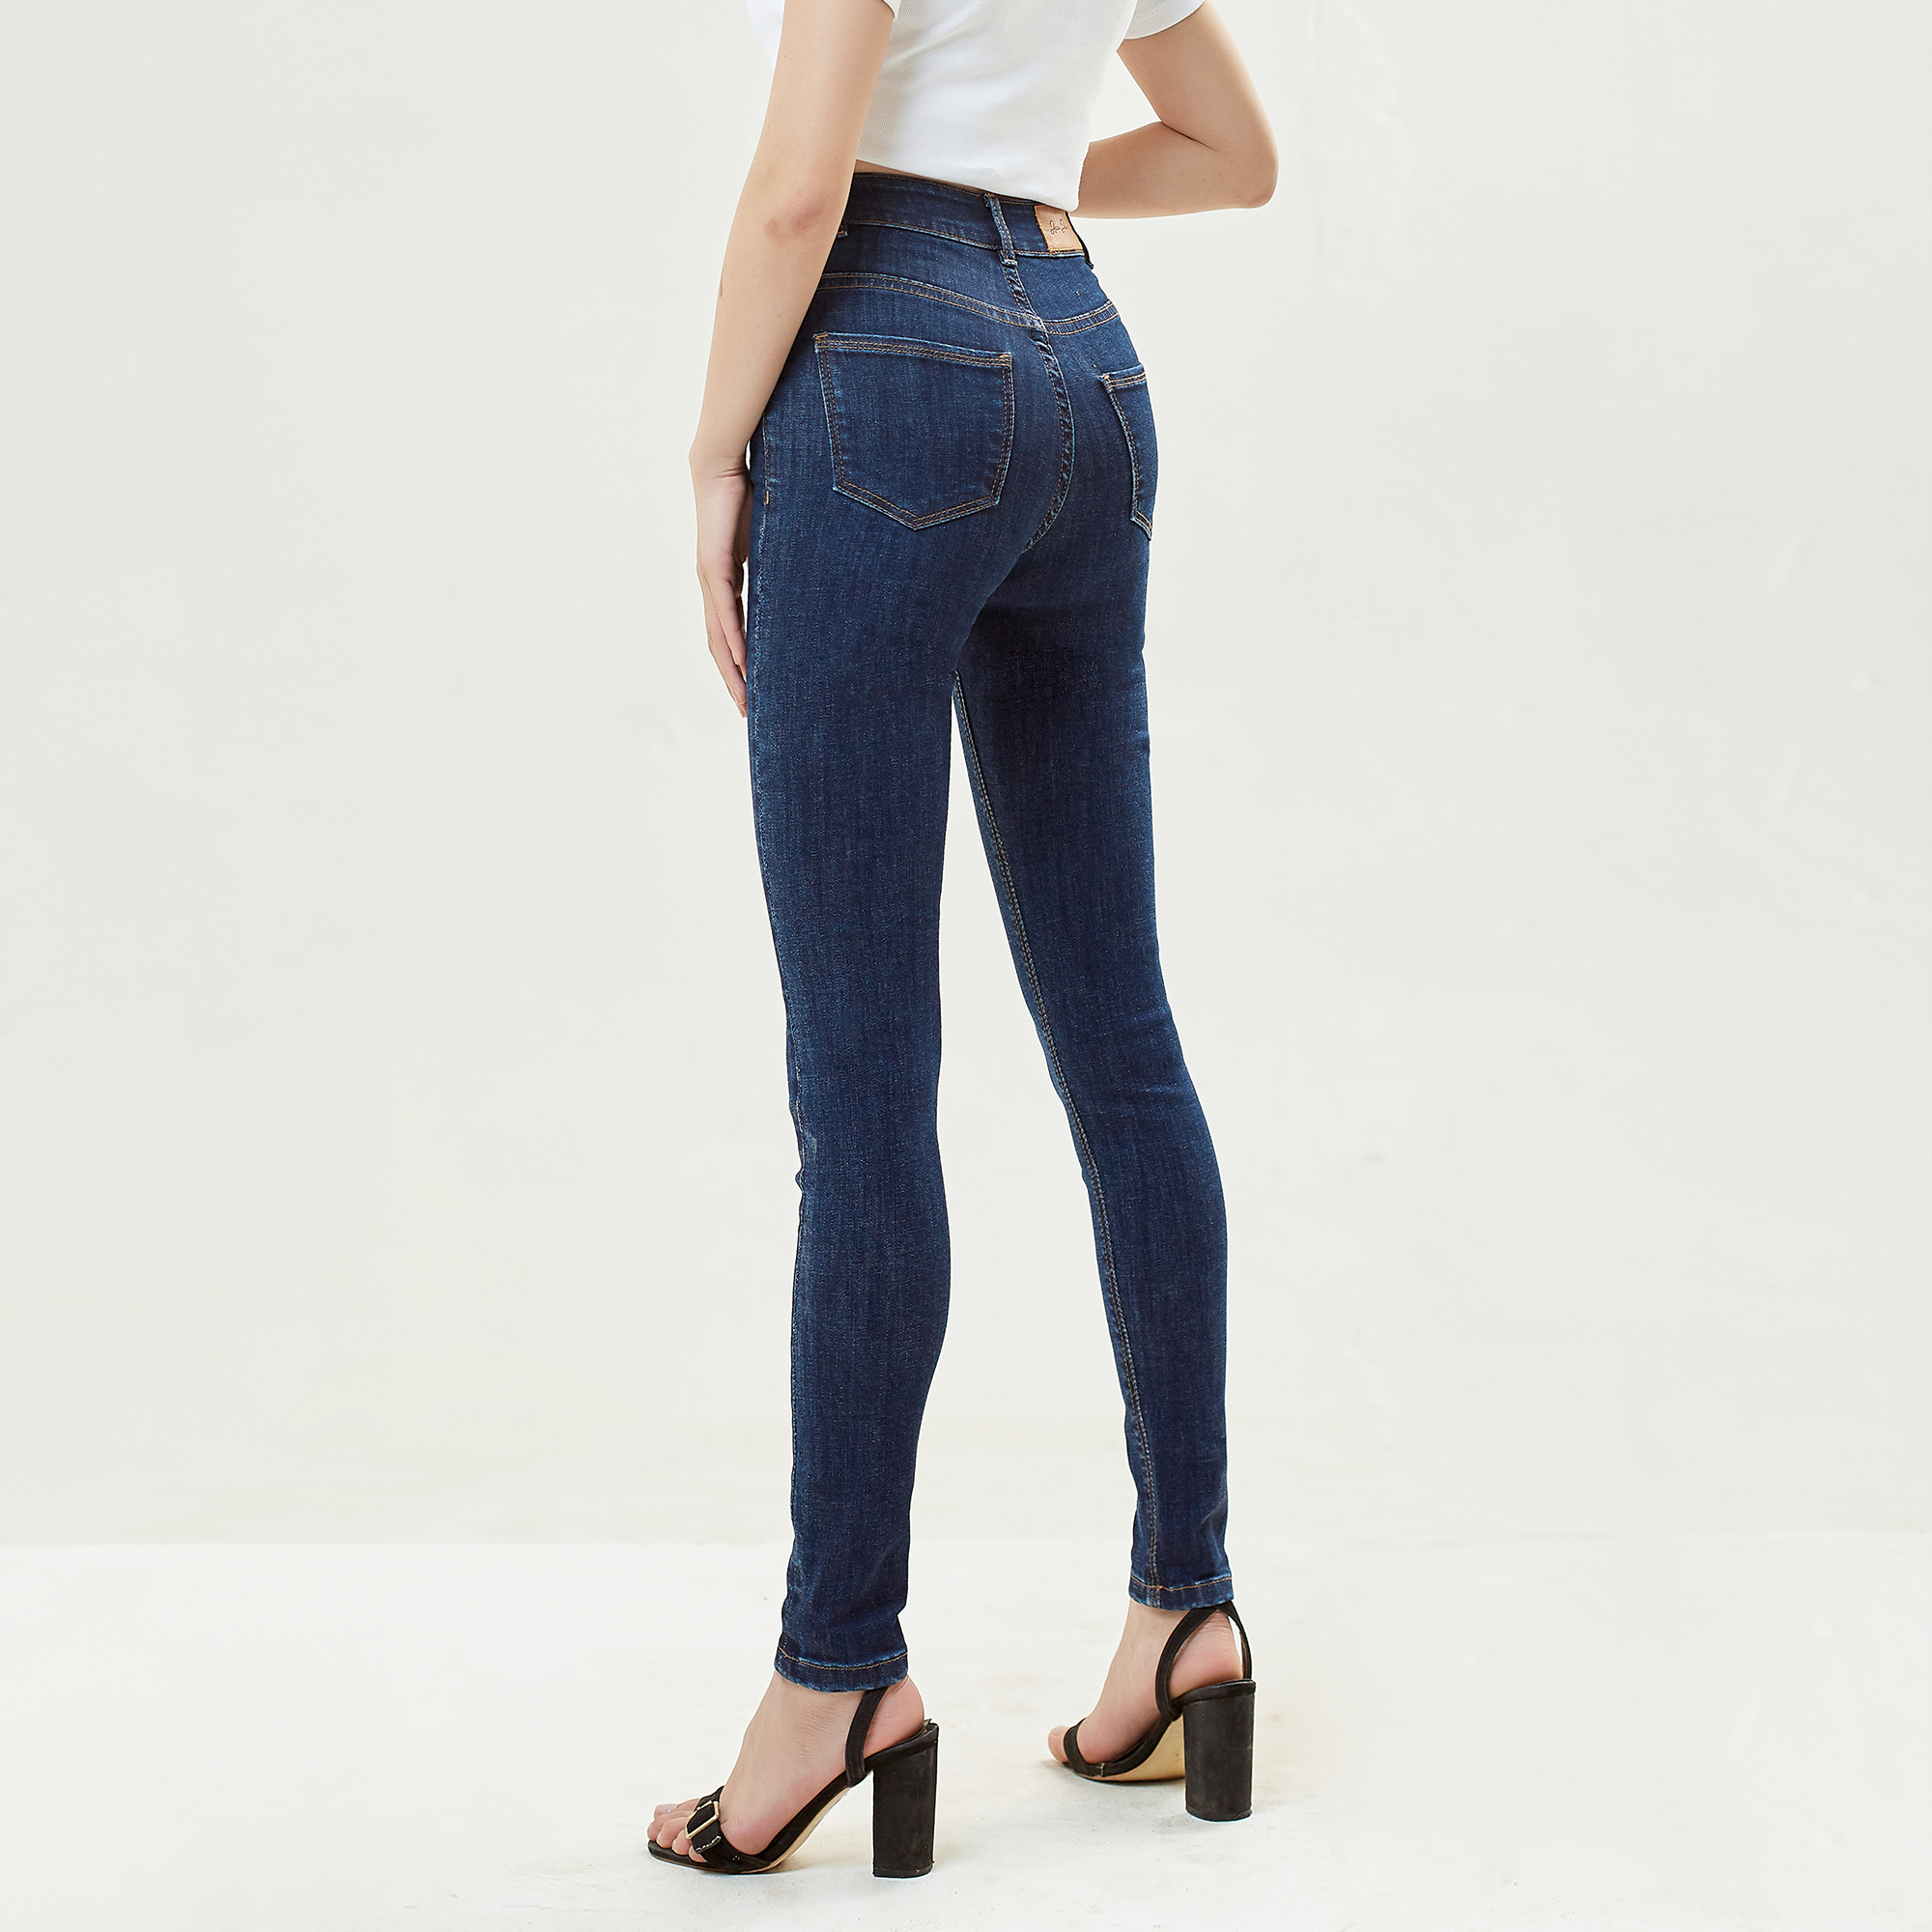 Quần Bò Nữ Cạp Cao Ôm Dáng Skinny Xanh Đậm Aaa Jeans